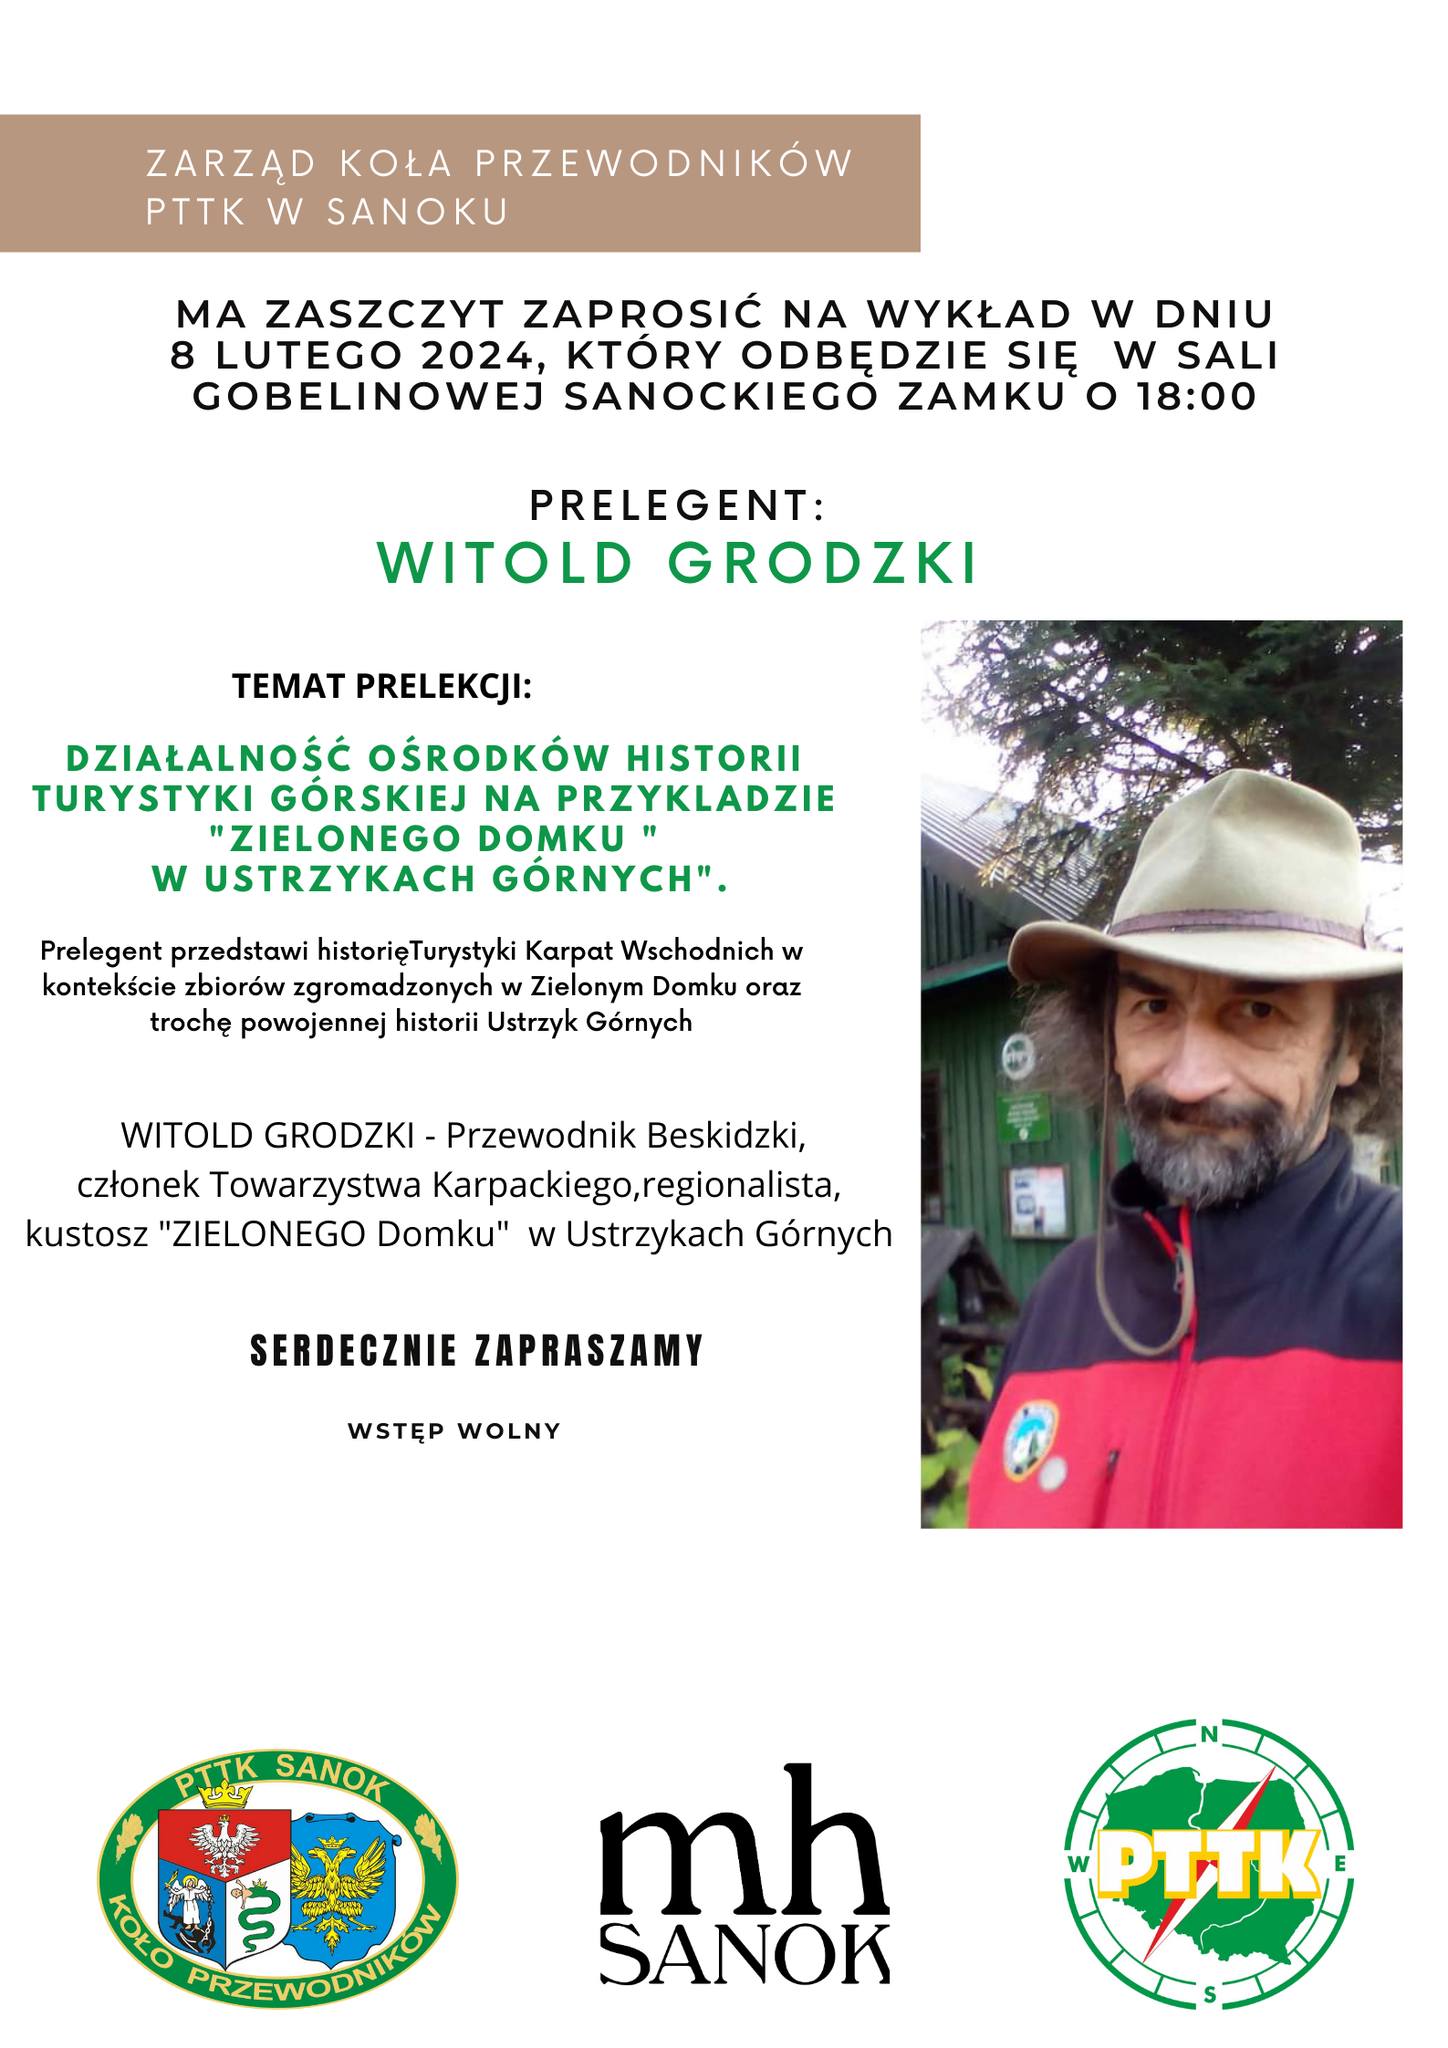 Witold Grodzki- kustosz „Zielonego Domku” dziś w MH